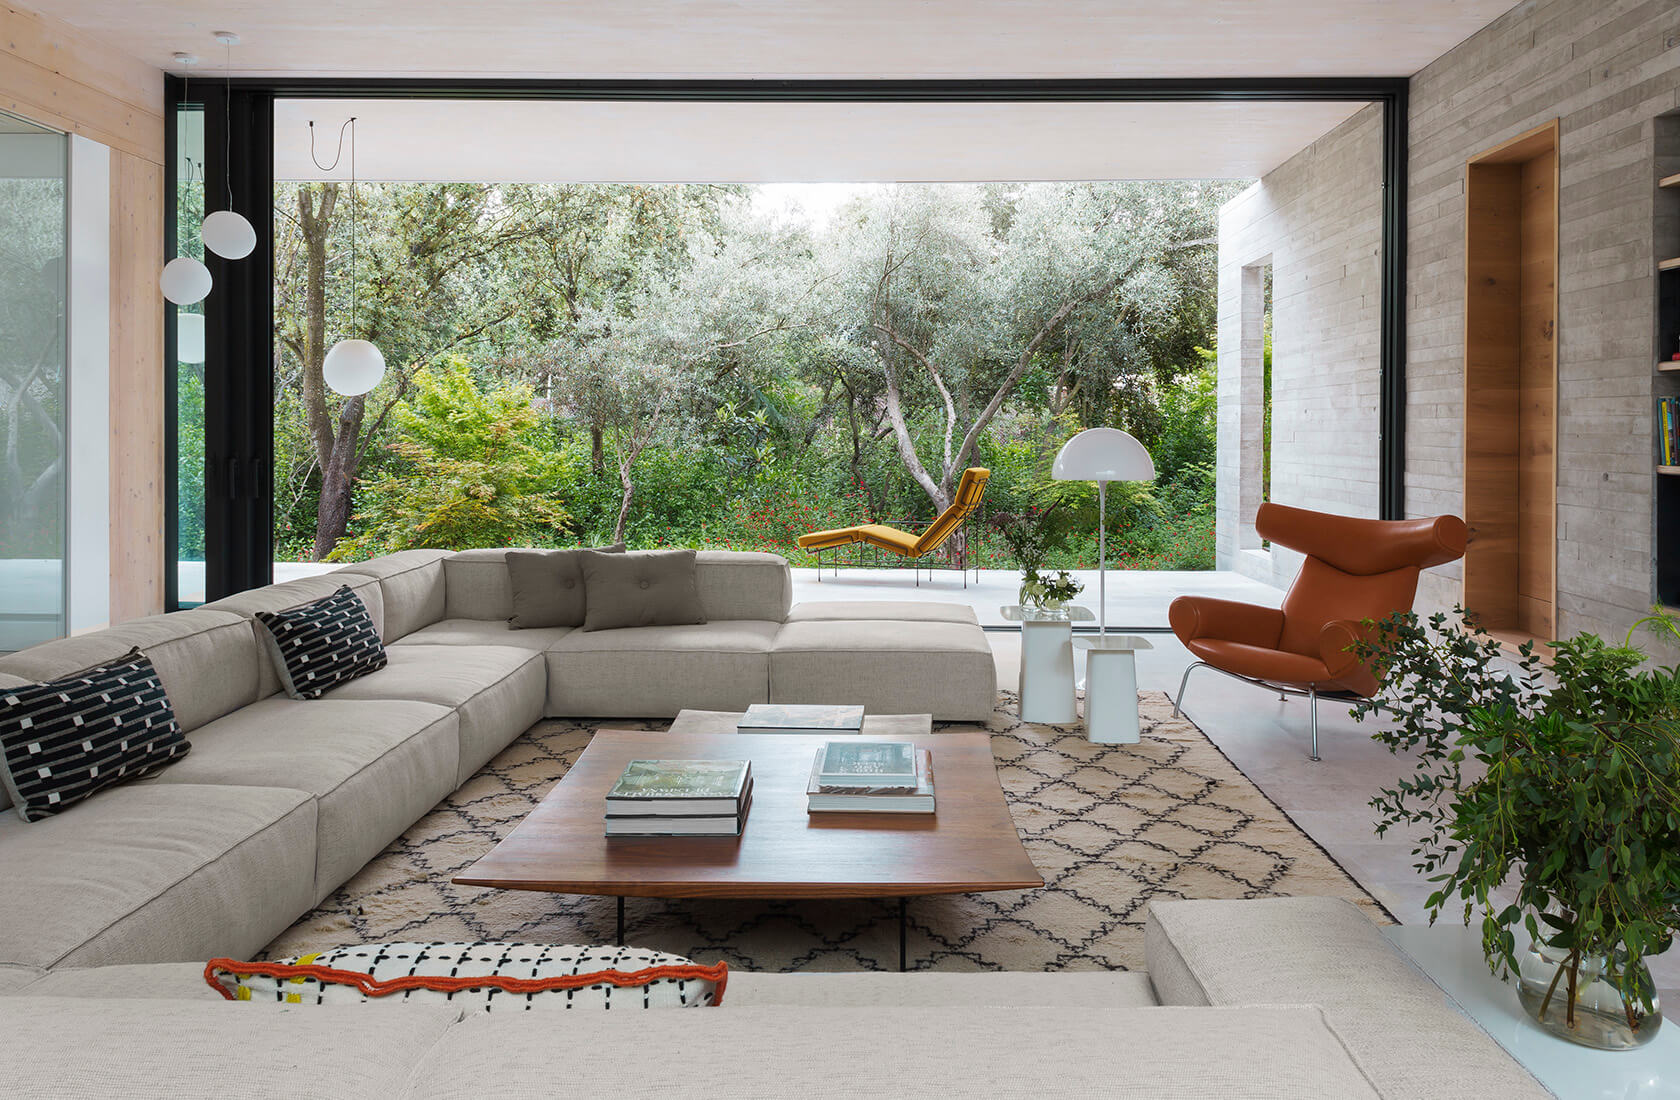 Casa Proyecto CH - Espanha. Sala de estar com sofa grande e cinza, tapete bege com preto, laje de concreto aparente e portas grandes do piso ao teto com vista para a natureza.